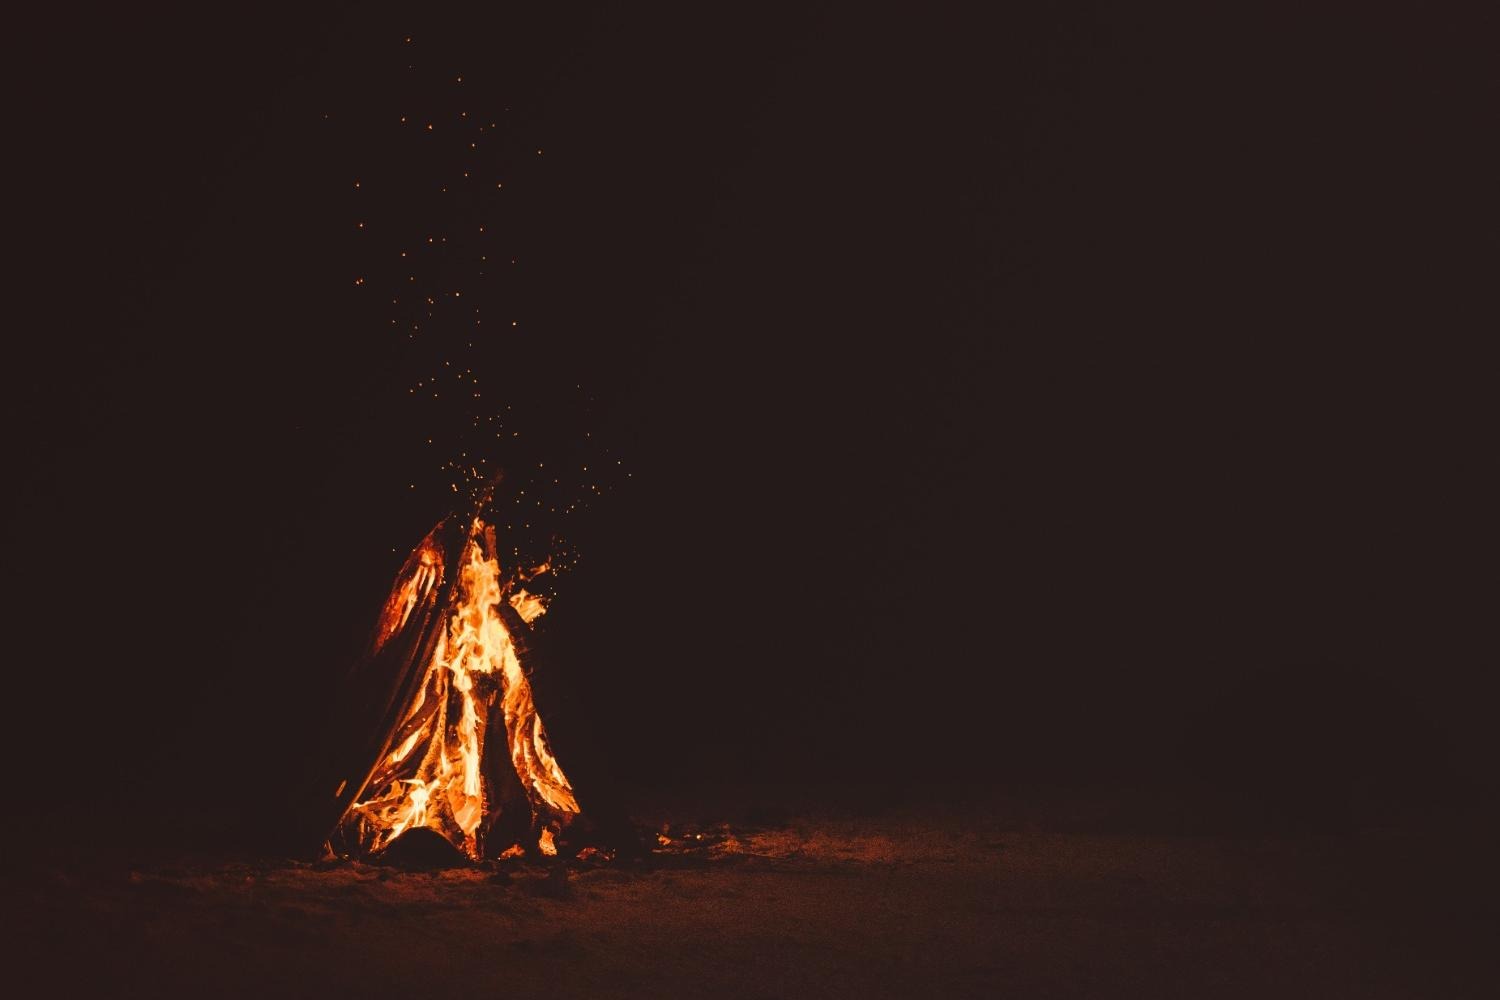 A campfire at night